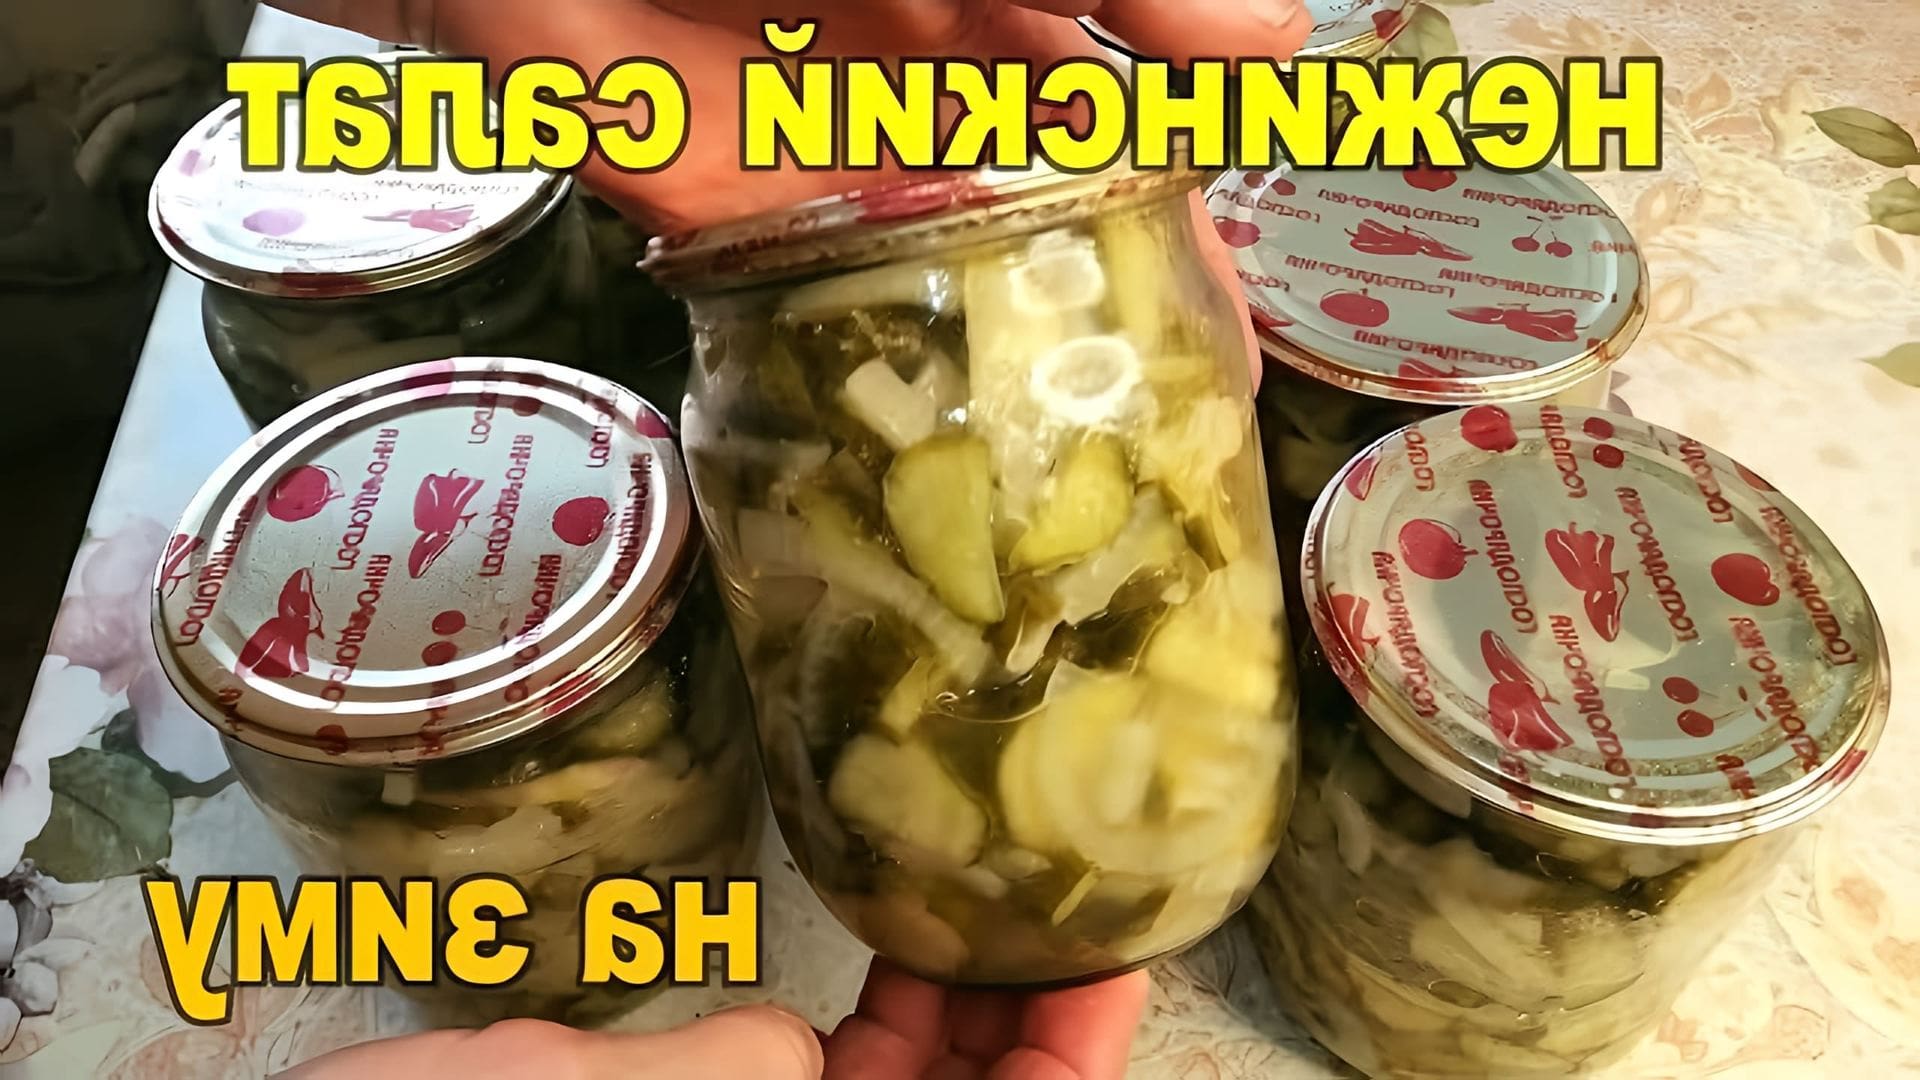 В этом видео демонстрируется рецепт приготовления салата "Неженский" из огурцов на зиму